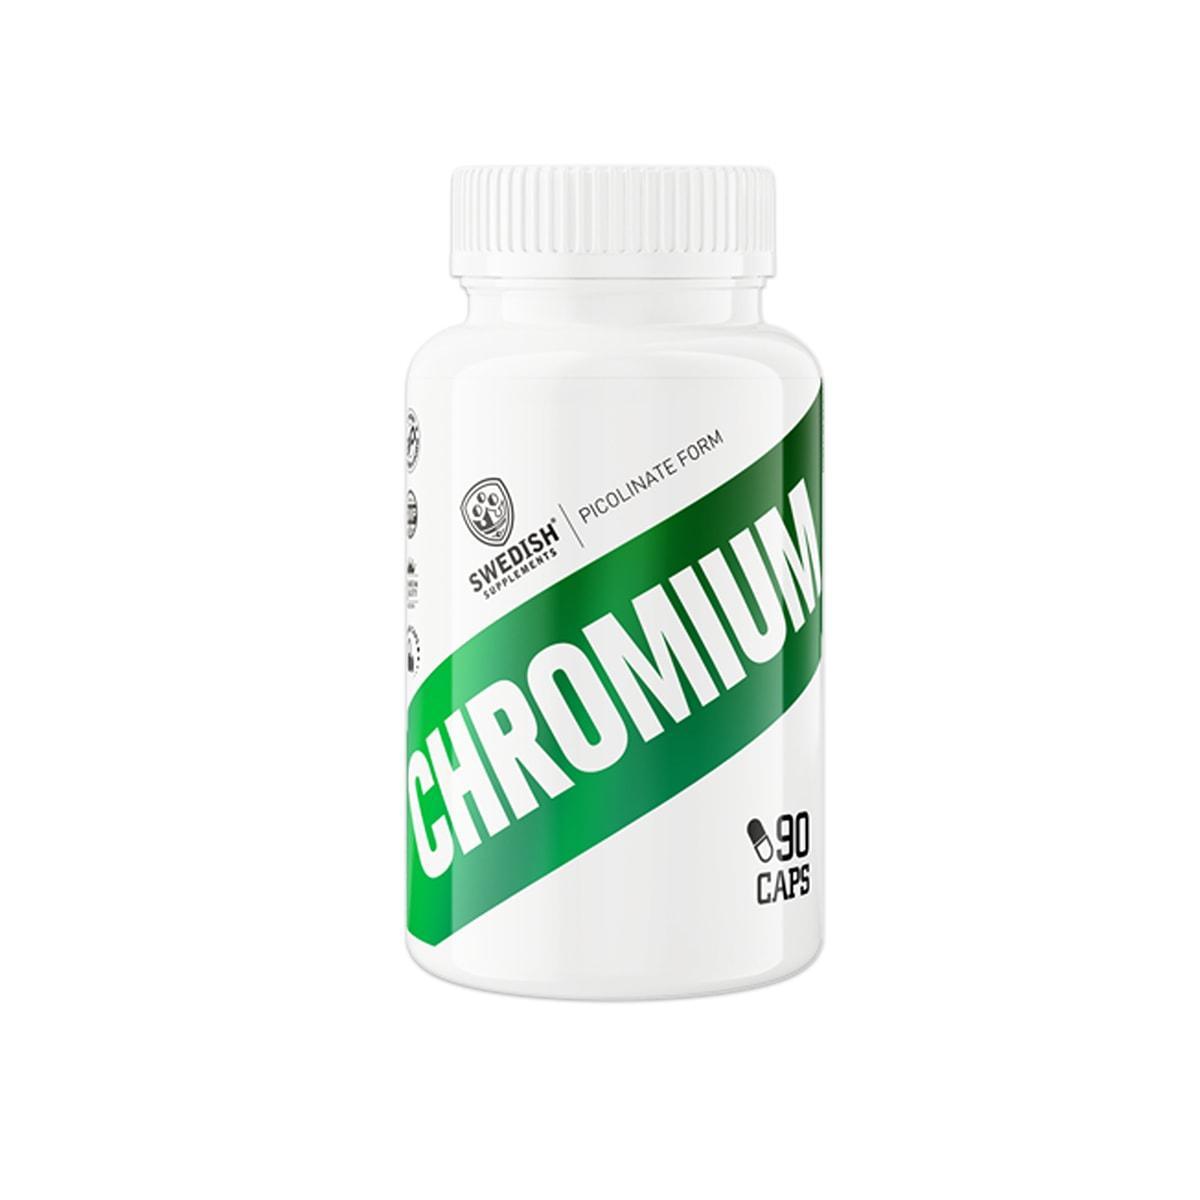 Swedish Supplements Chromium 90 caps